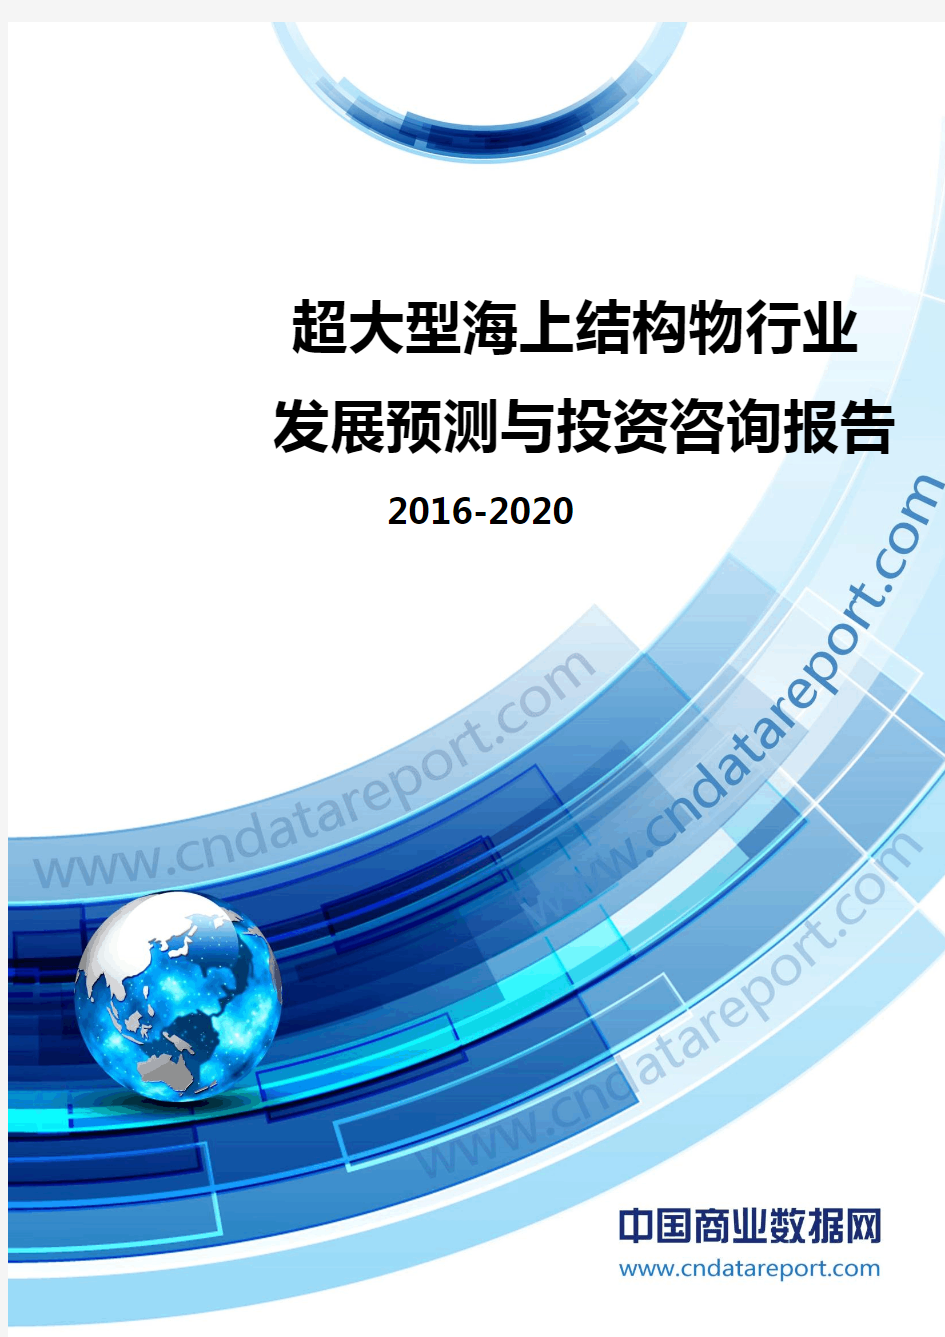 超大型海上结构物行业发展预测及投资咨询报告